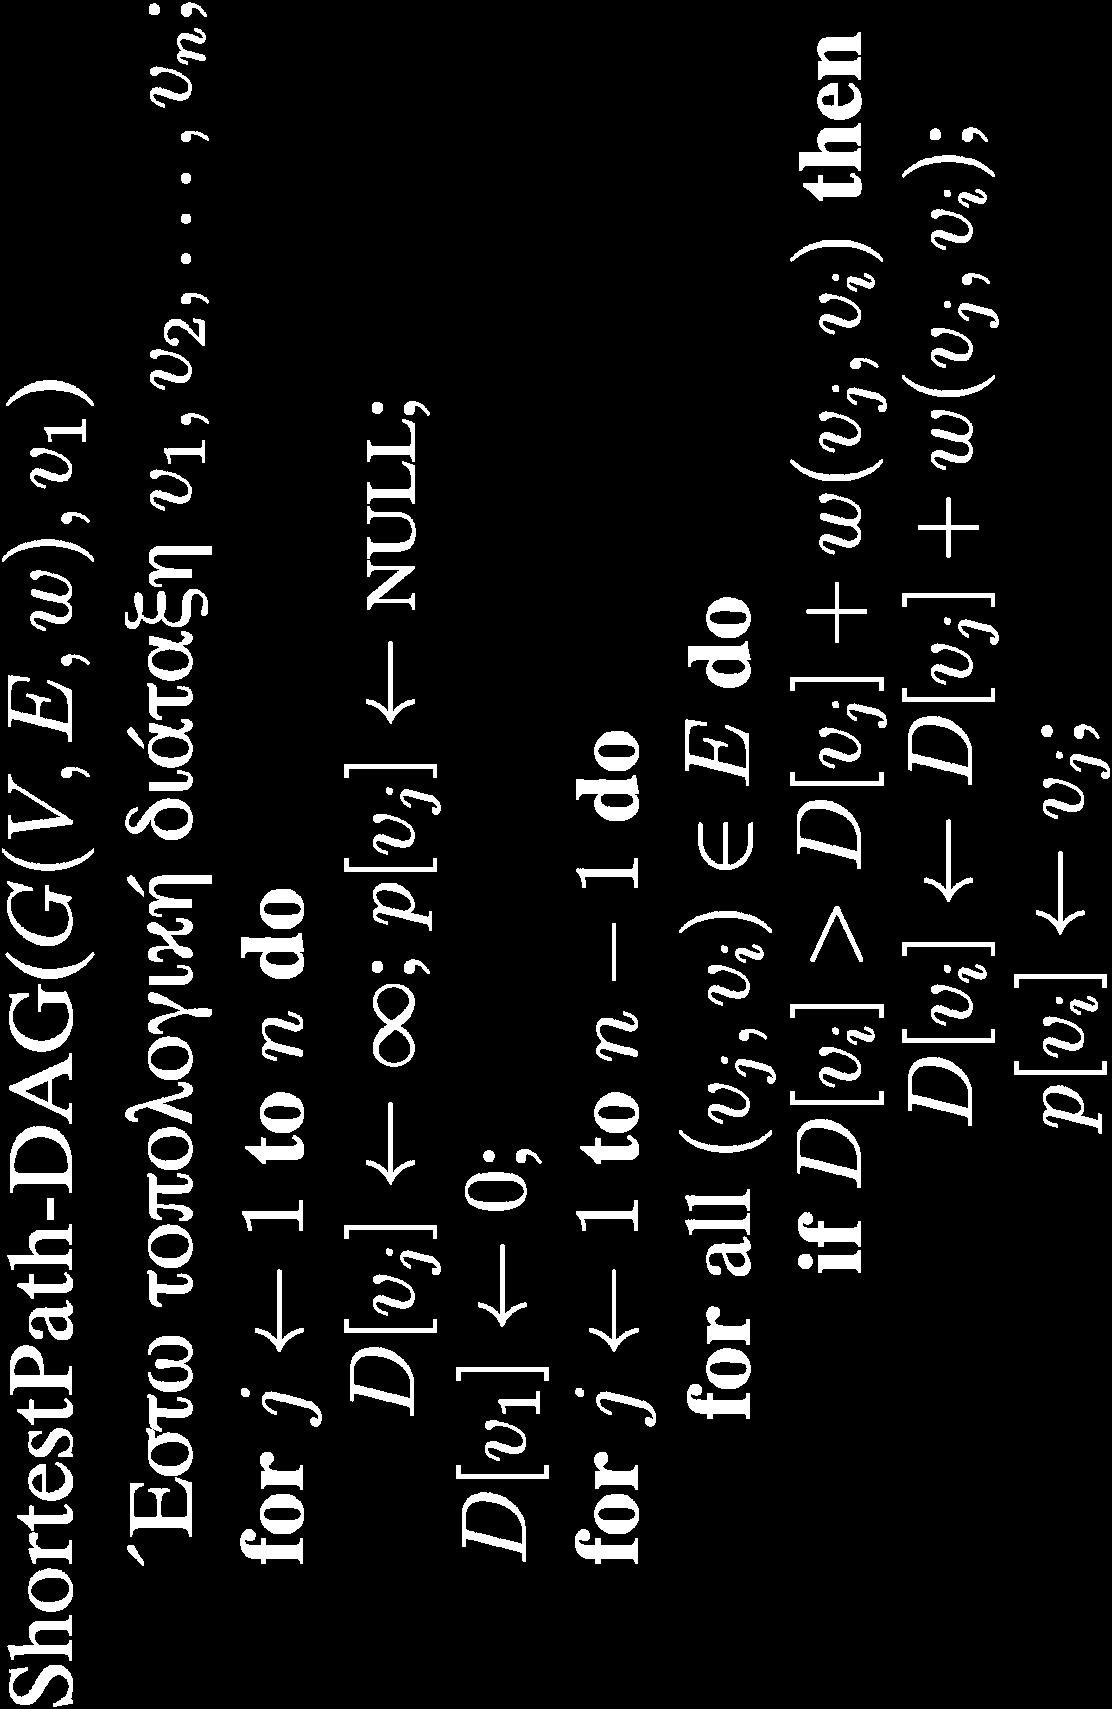 Συντομότερα Μονοπάτια σε DAG Χρόνος εκτέλεσης: γραμμικός, Θ(n+m) Χρησιμοποιείται και για υπολογισμό μακρύτερων μονοπατιών.